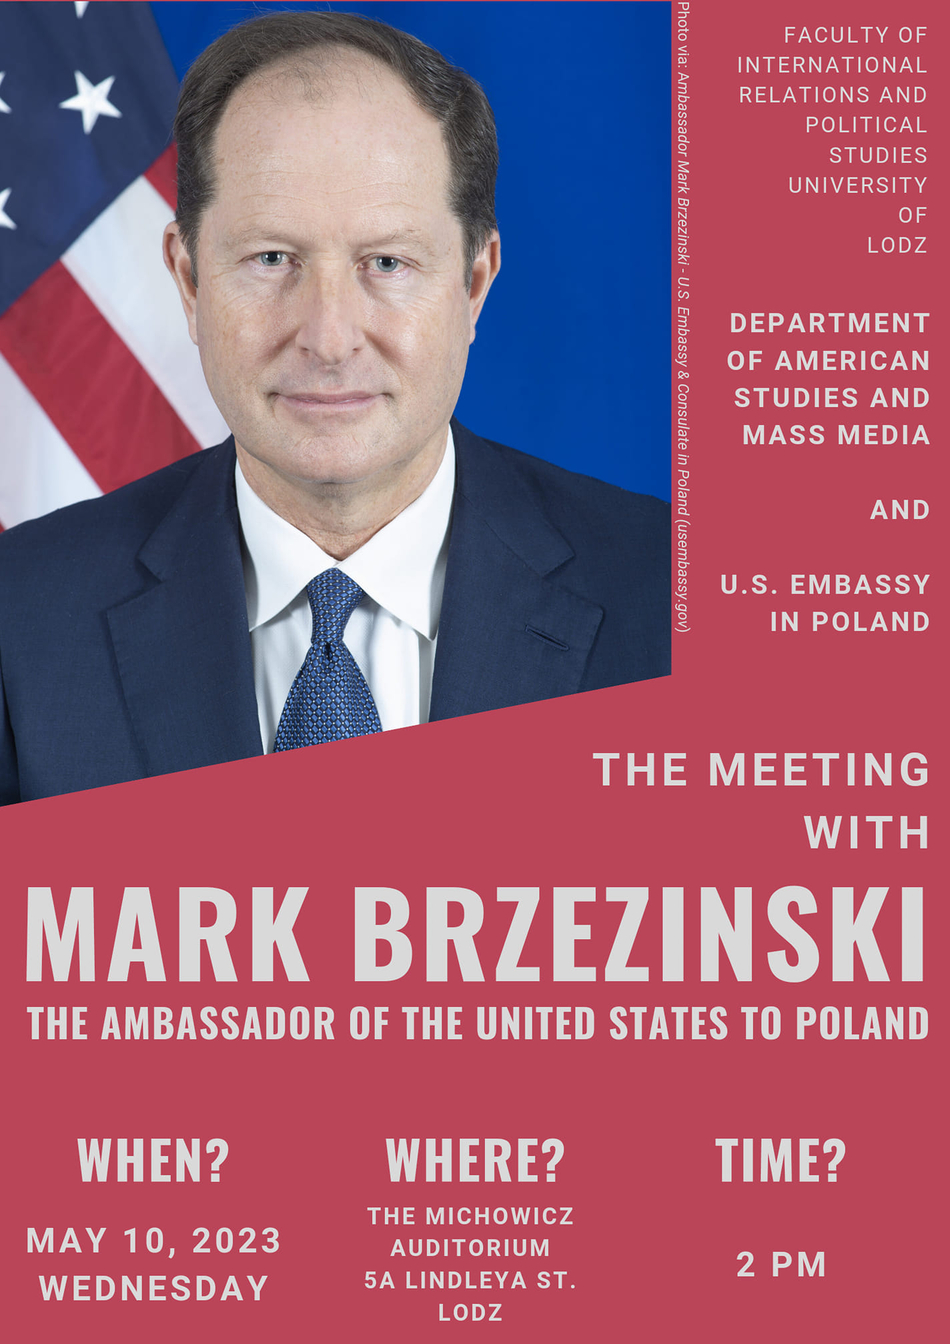 plakat informacyjny o wydarzeniu z wizerunkiem Ambasadora Stanów Zjednoczonych Marka Brzezińskiego